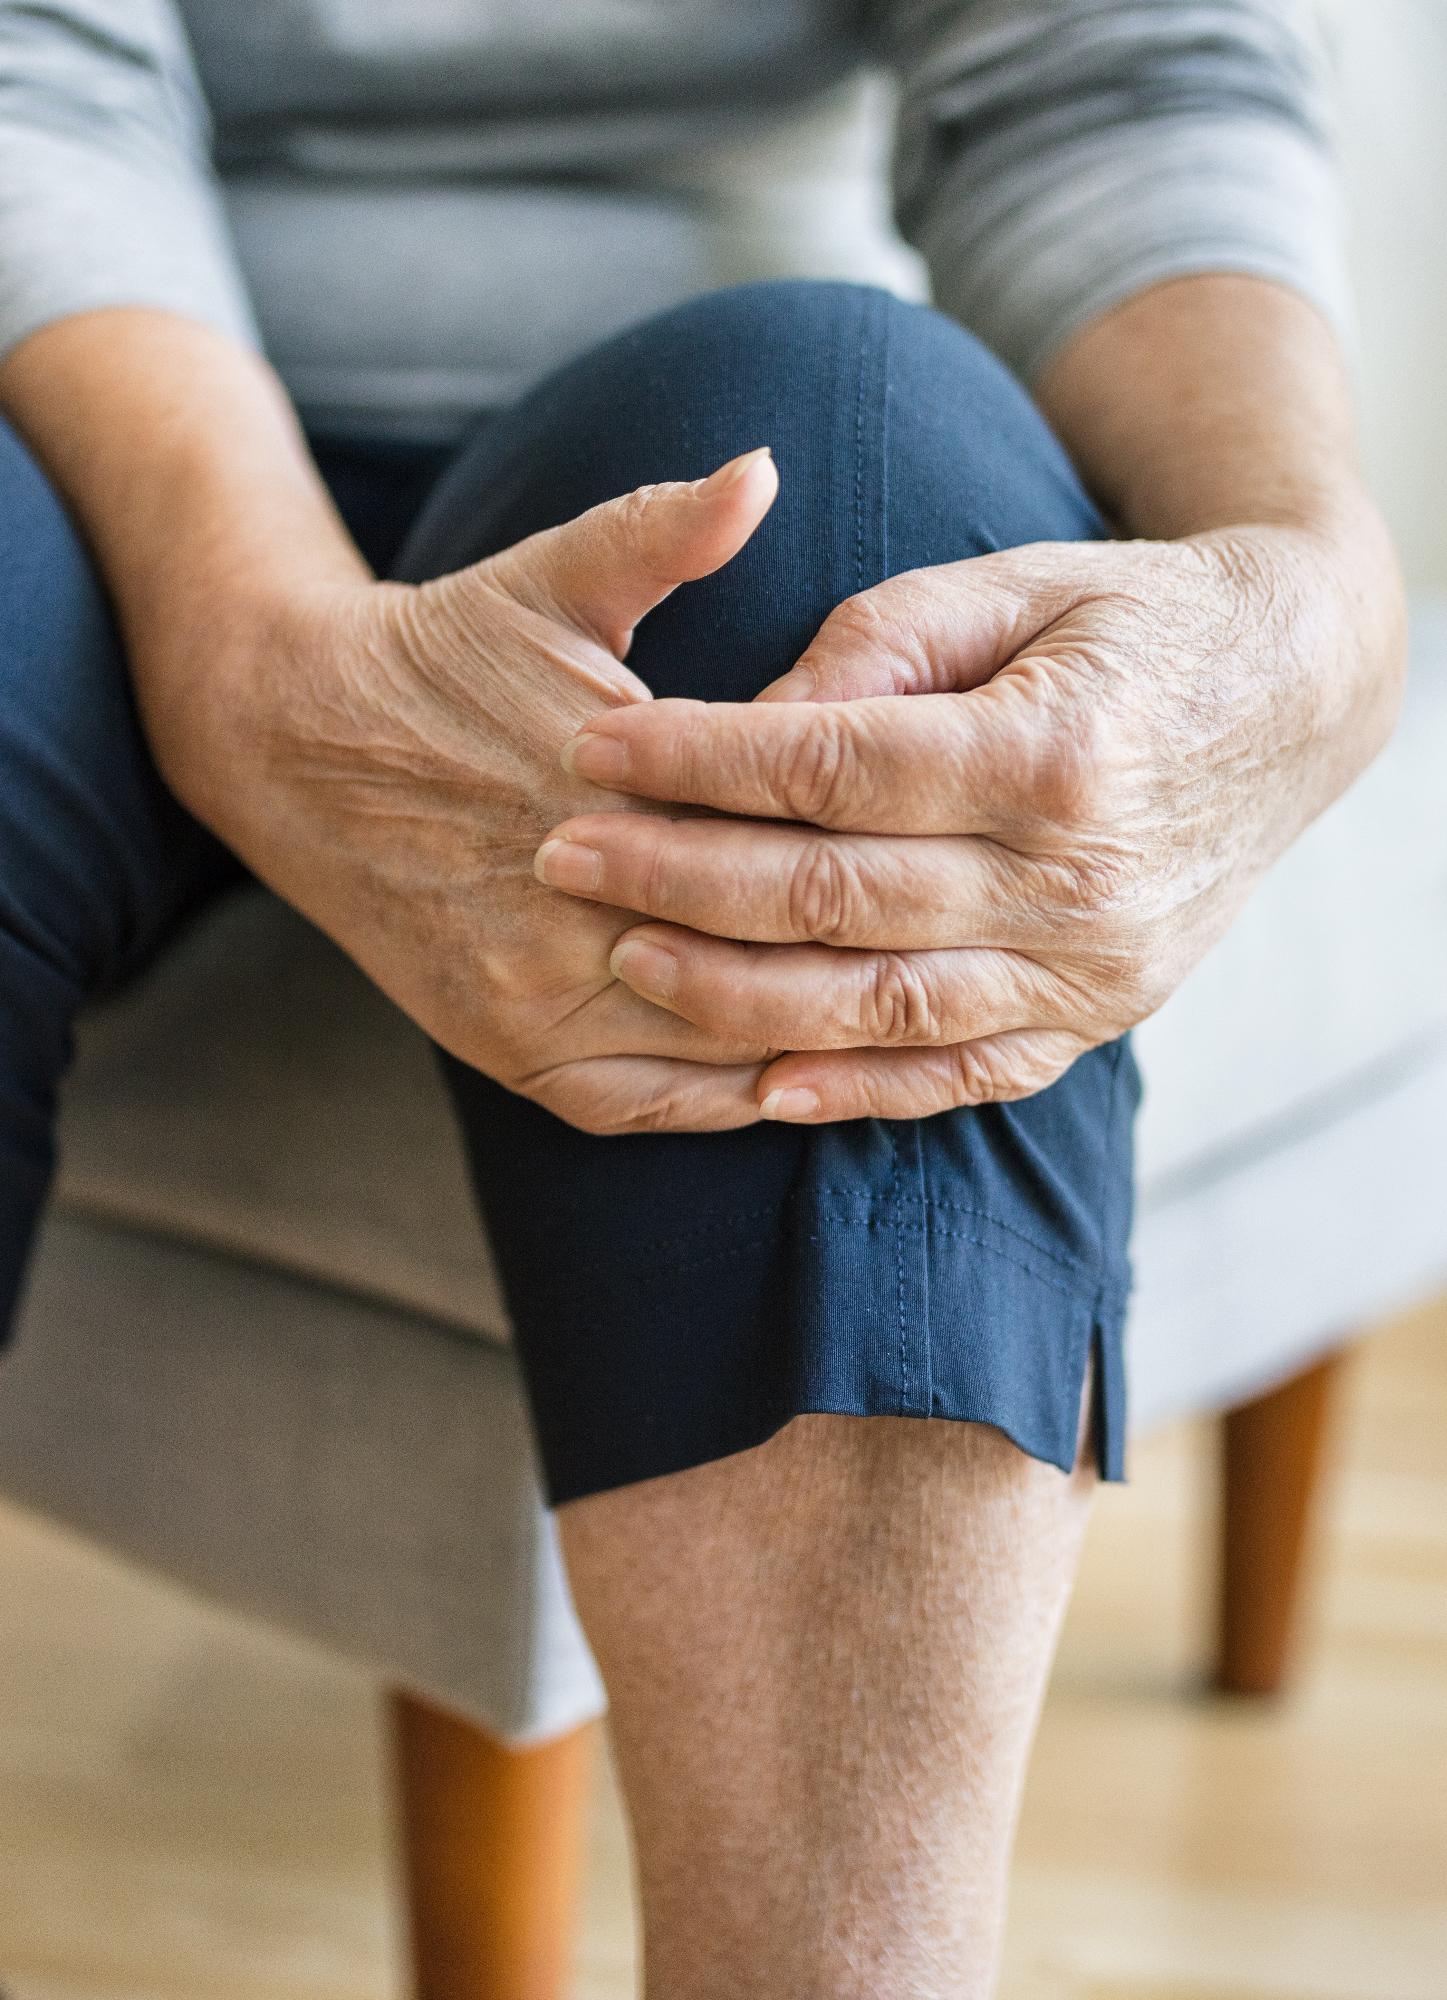 Revmatoidni artritis je definitivno nekaj na kar se mora človek navadit